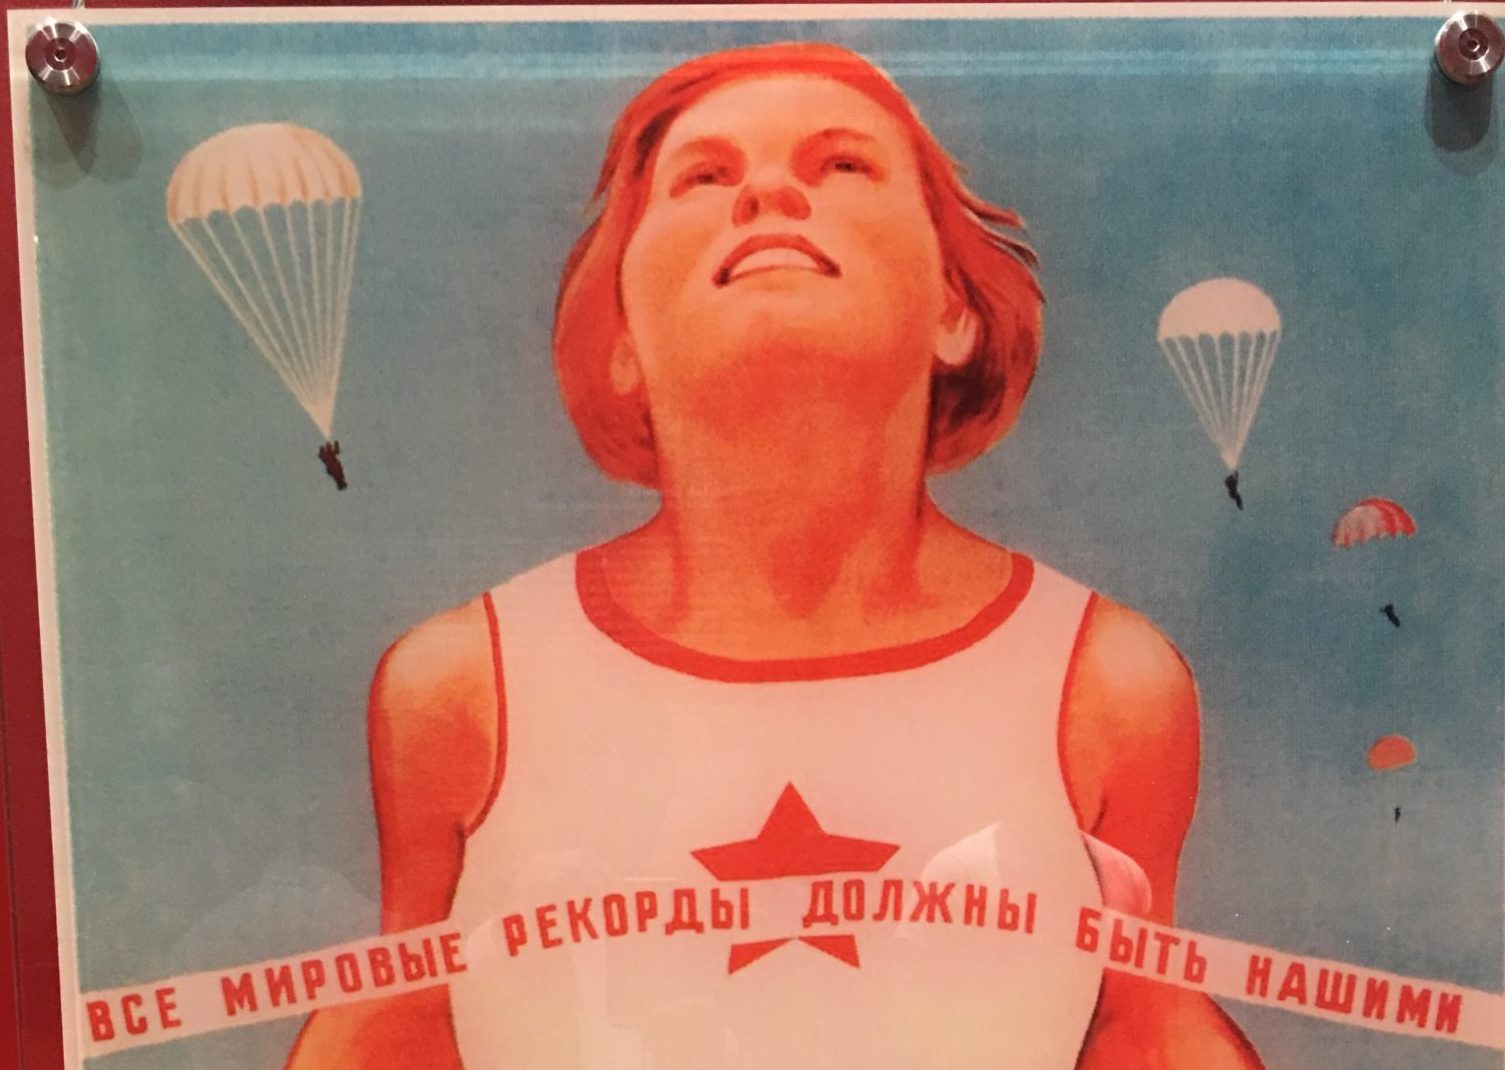 Всем рекордам наши звонкие. Советские плакаты про спорт. Советские плакаты про женщин. Все мировые рекорды должны быть нашими плакат. Женщина с плакатом.